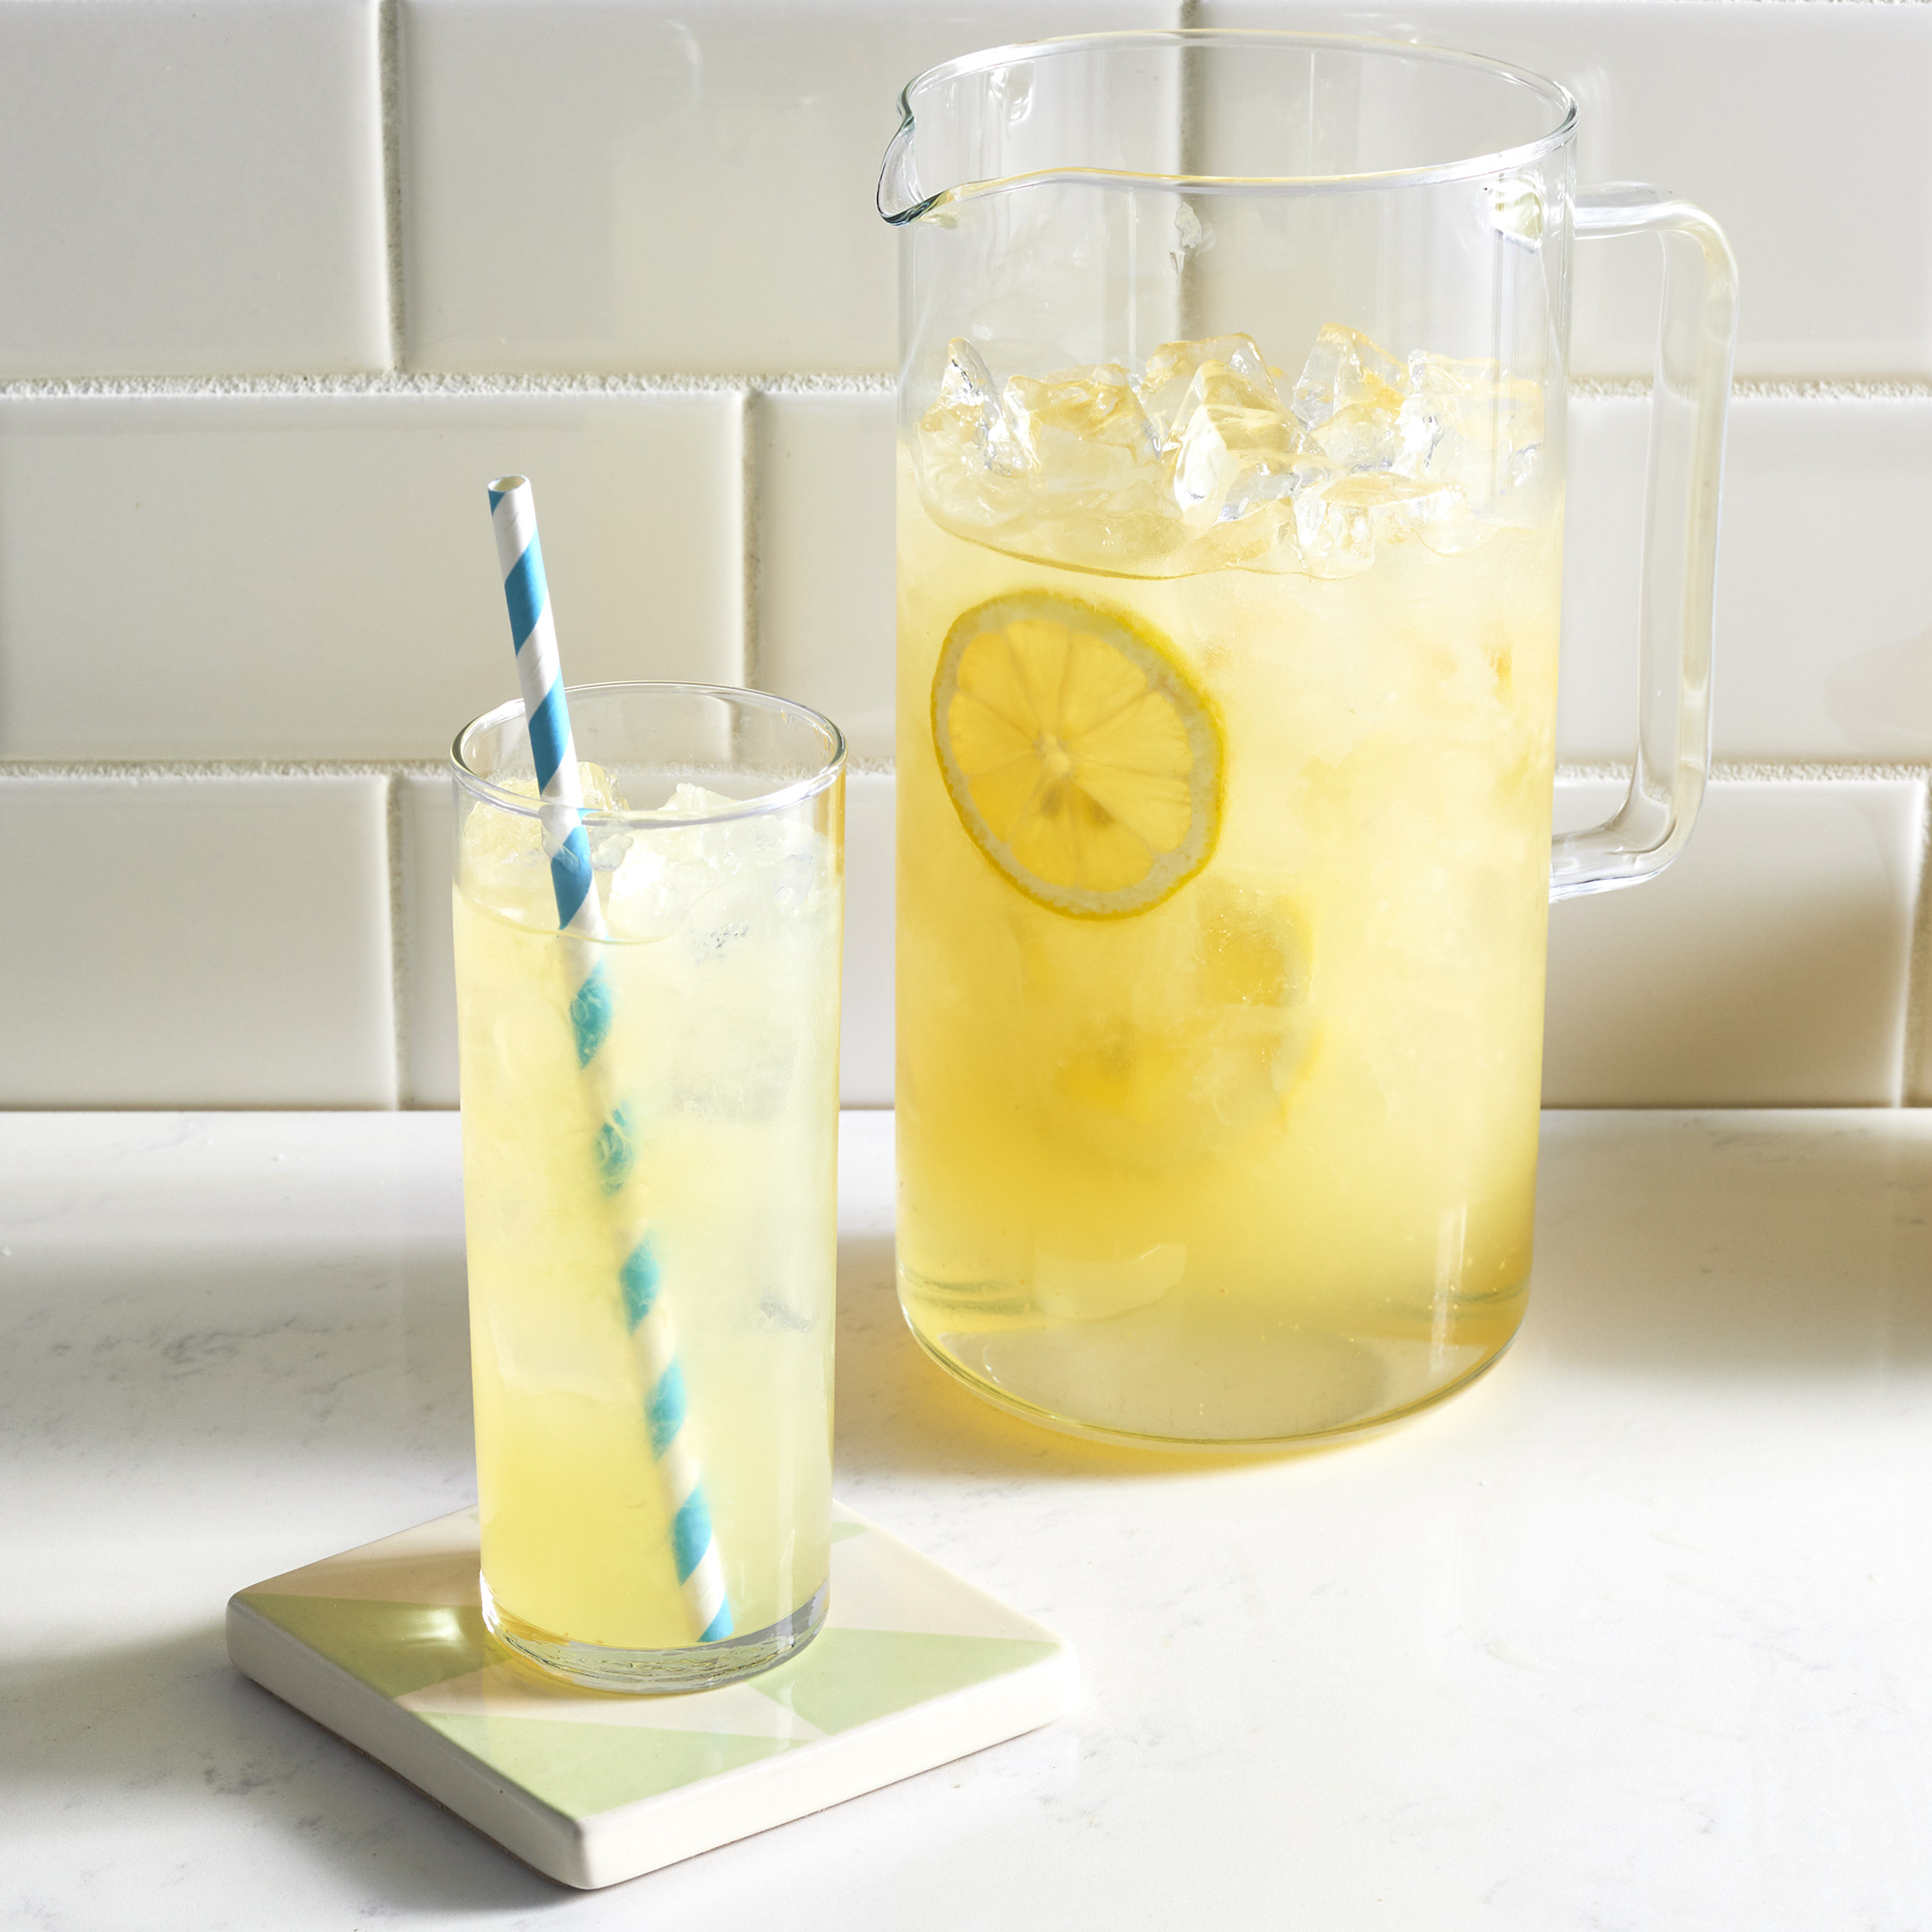 Best Lemonade Ever - Recipes